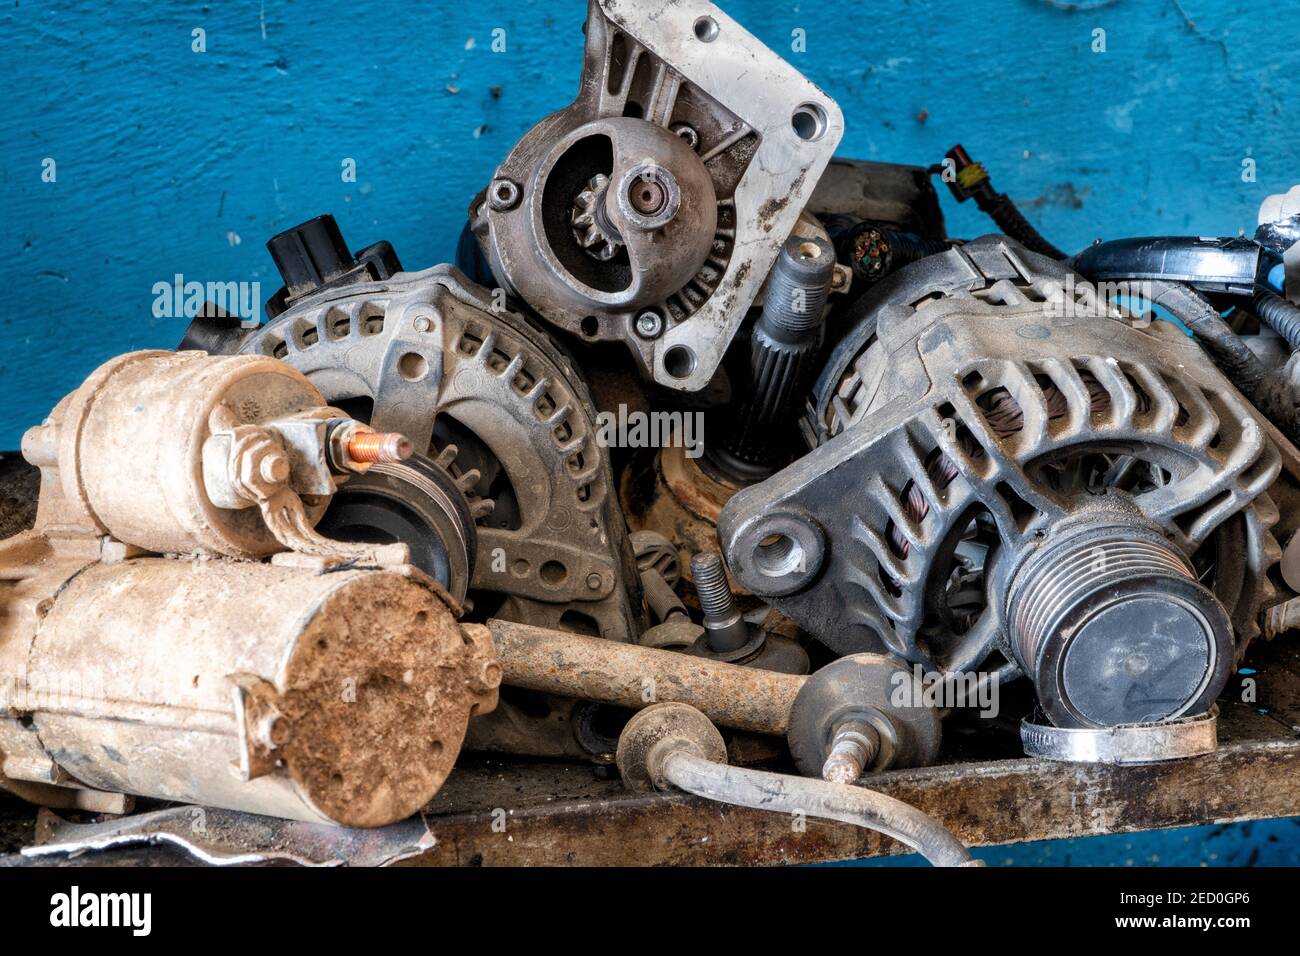 Une série d'anciennes pièces automobiles, y compris les alternateurs, les démarreurs et les moteurs. Photo parfaite pour le travail, les arts et l'artisanat. Banque D'Images